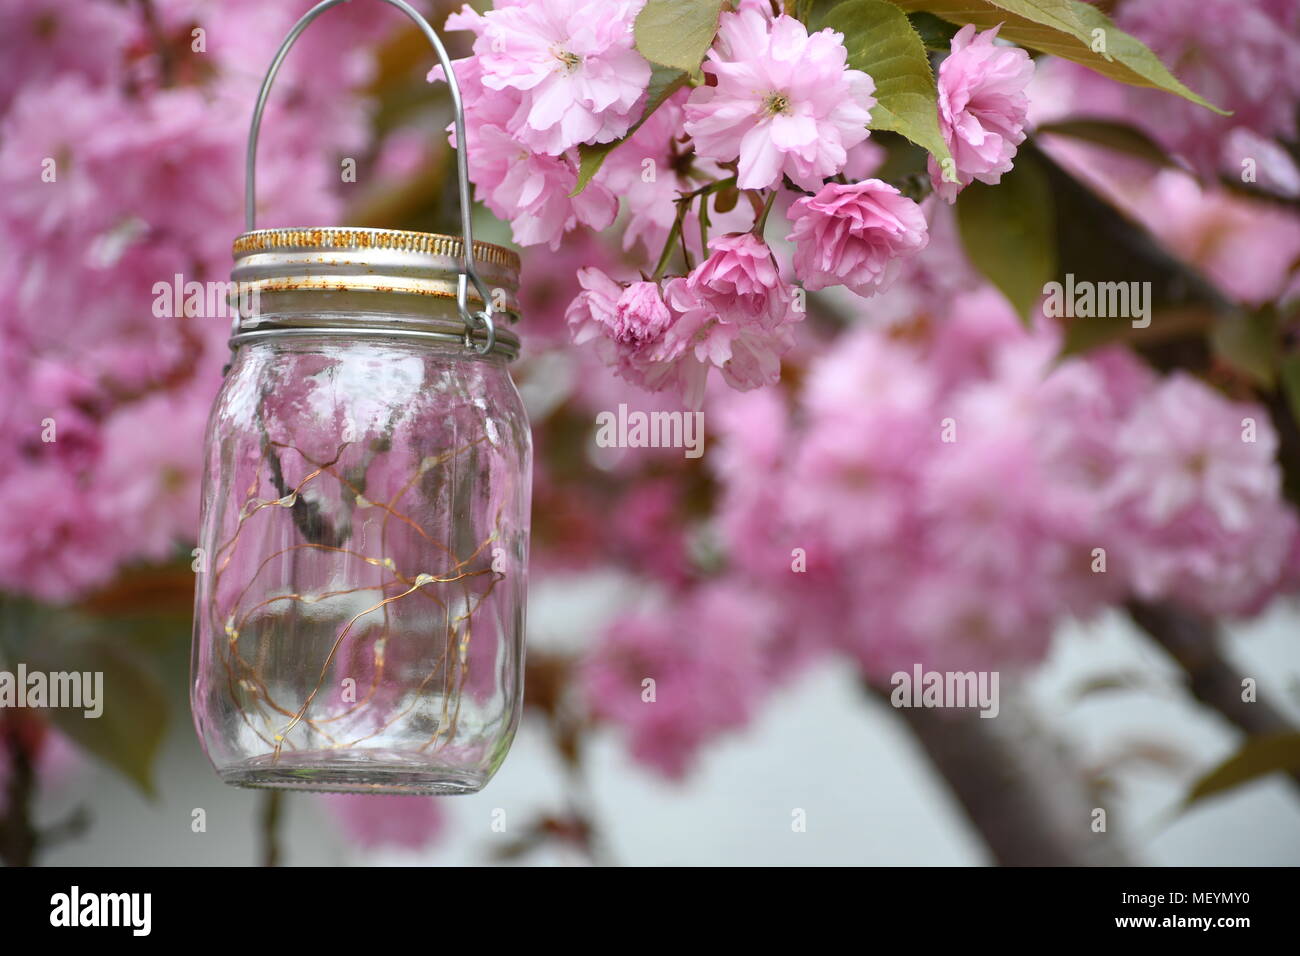 Mason jar Laterne hängend in einem Apfelbaum in voller Blüte Stockfoto